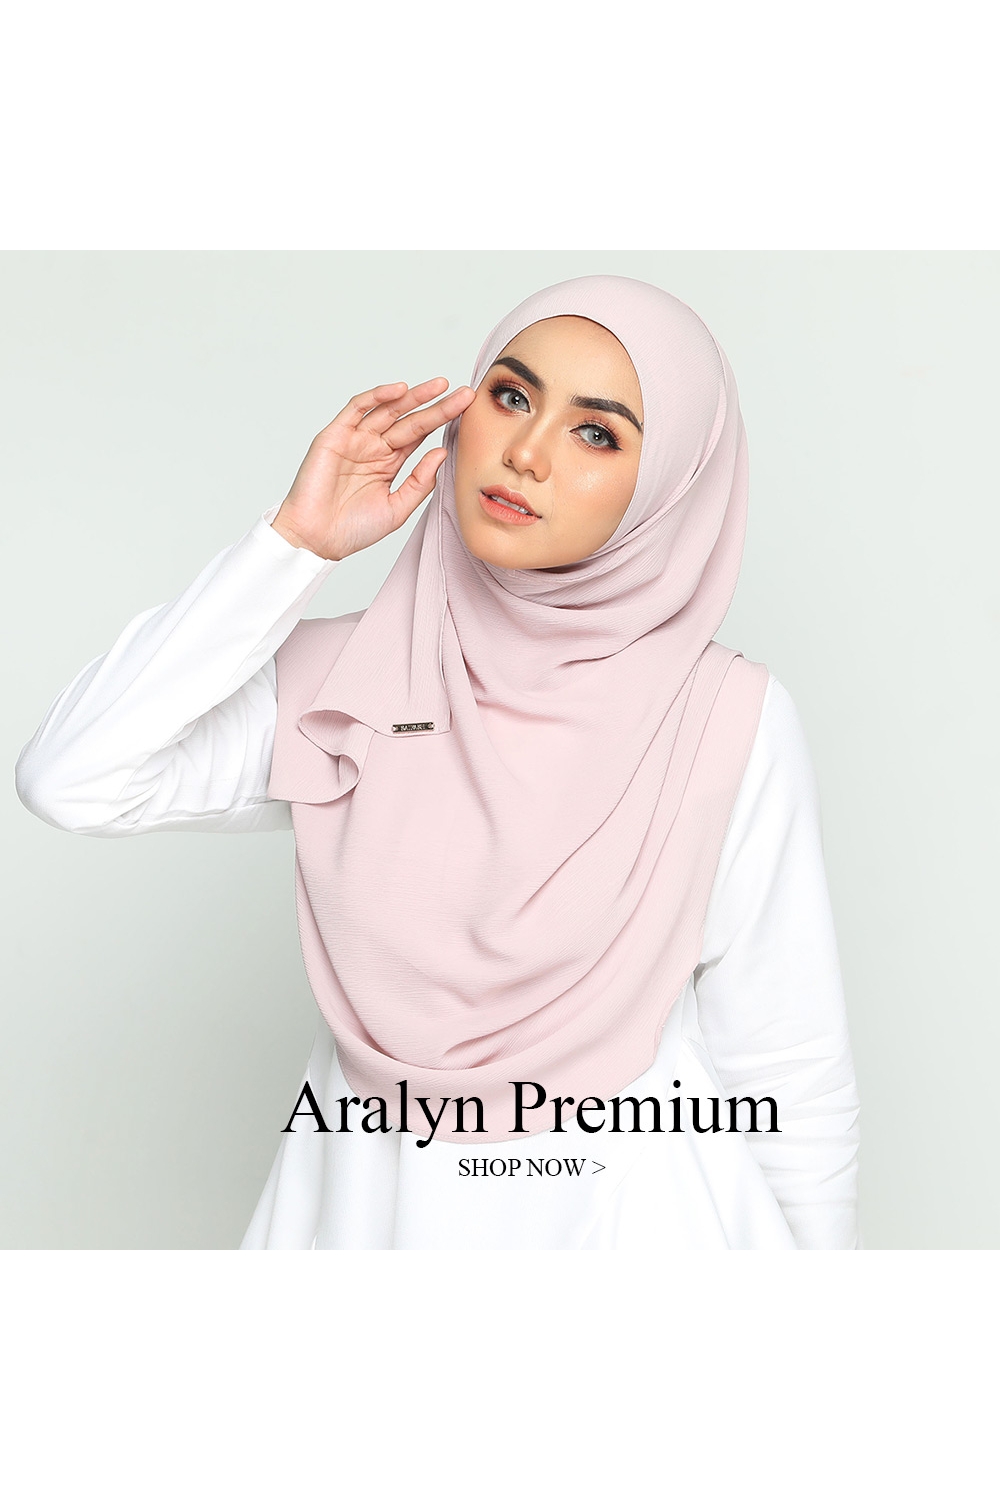 Premium Aralyn Instant Shawl